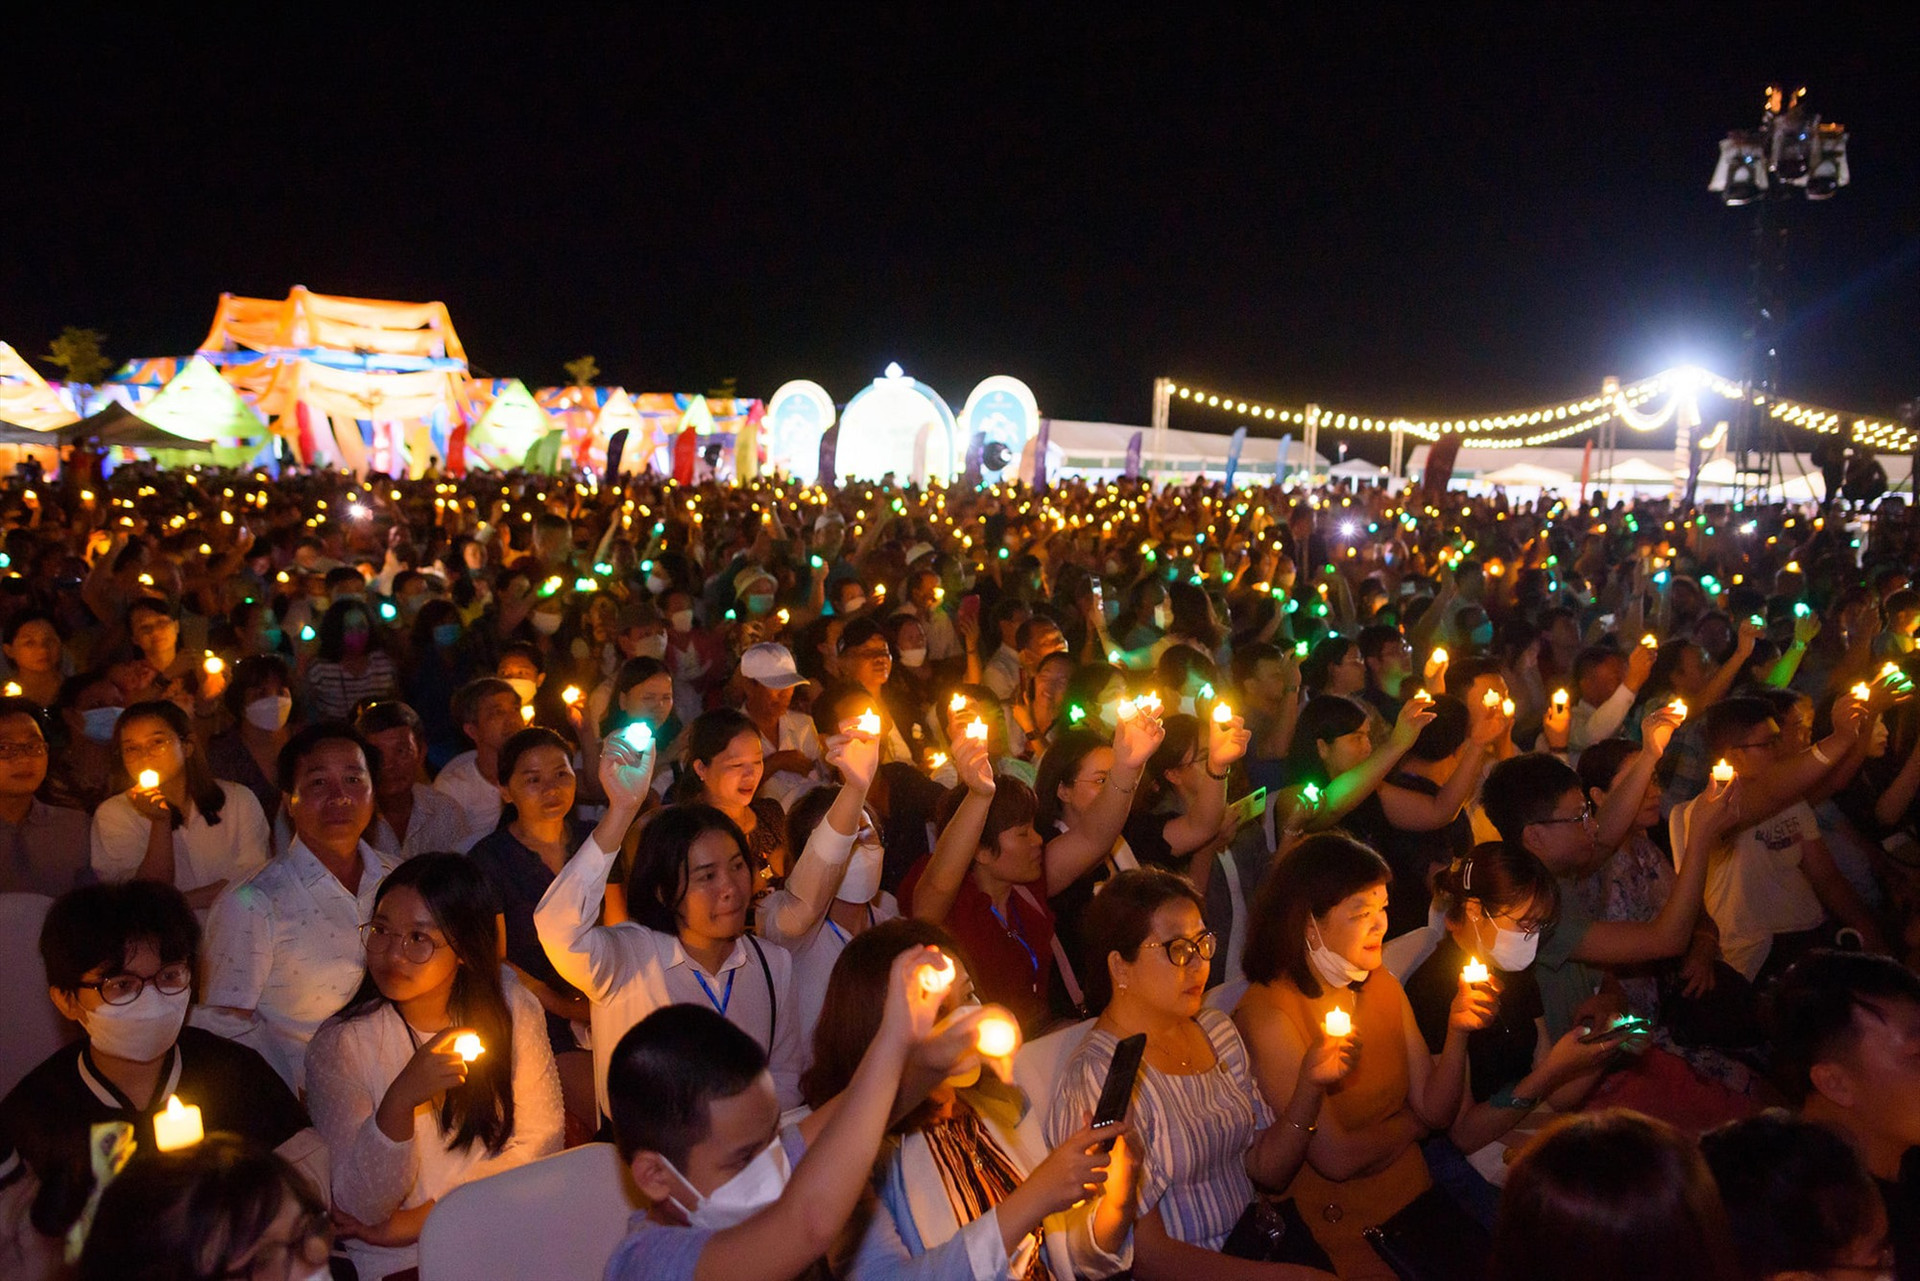 Hàng nghìn khán giả đã hòa nhịp cùng ca sỹ trong những tình khúc nhạc Trịnh